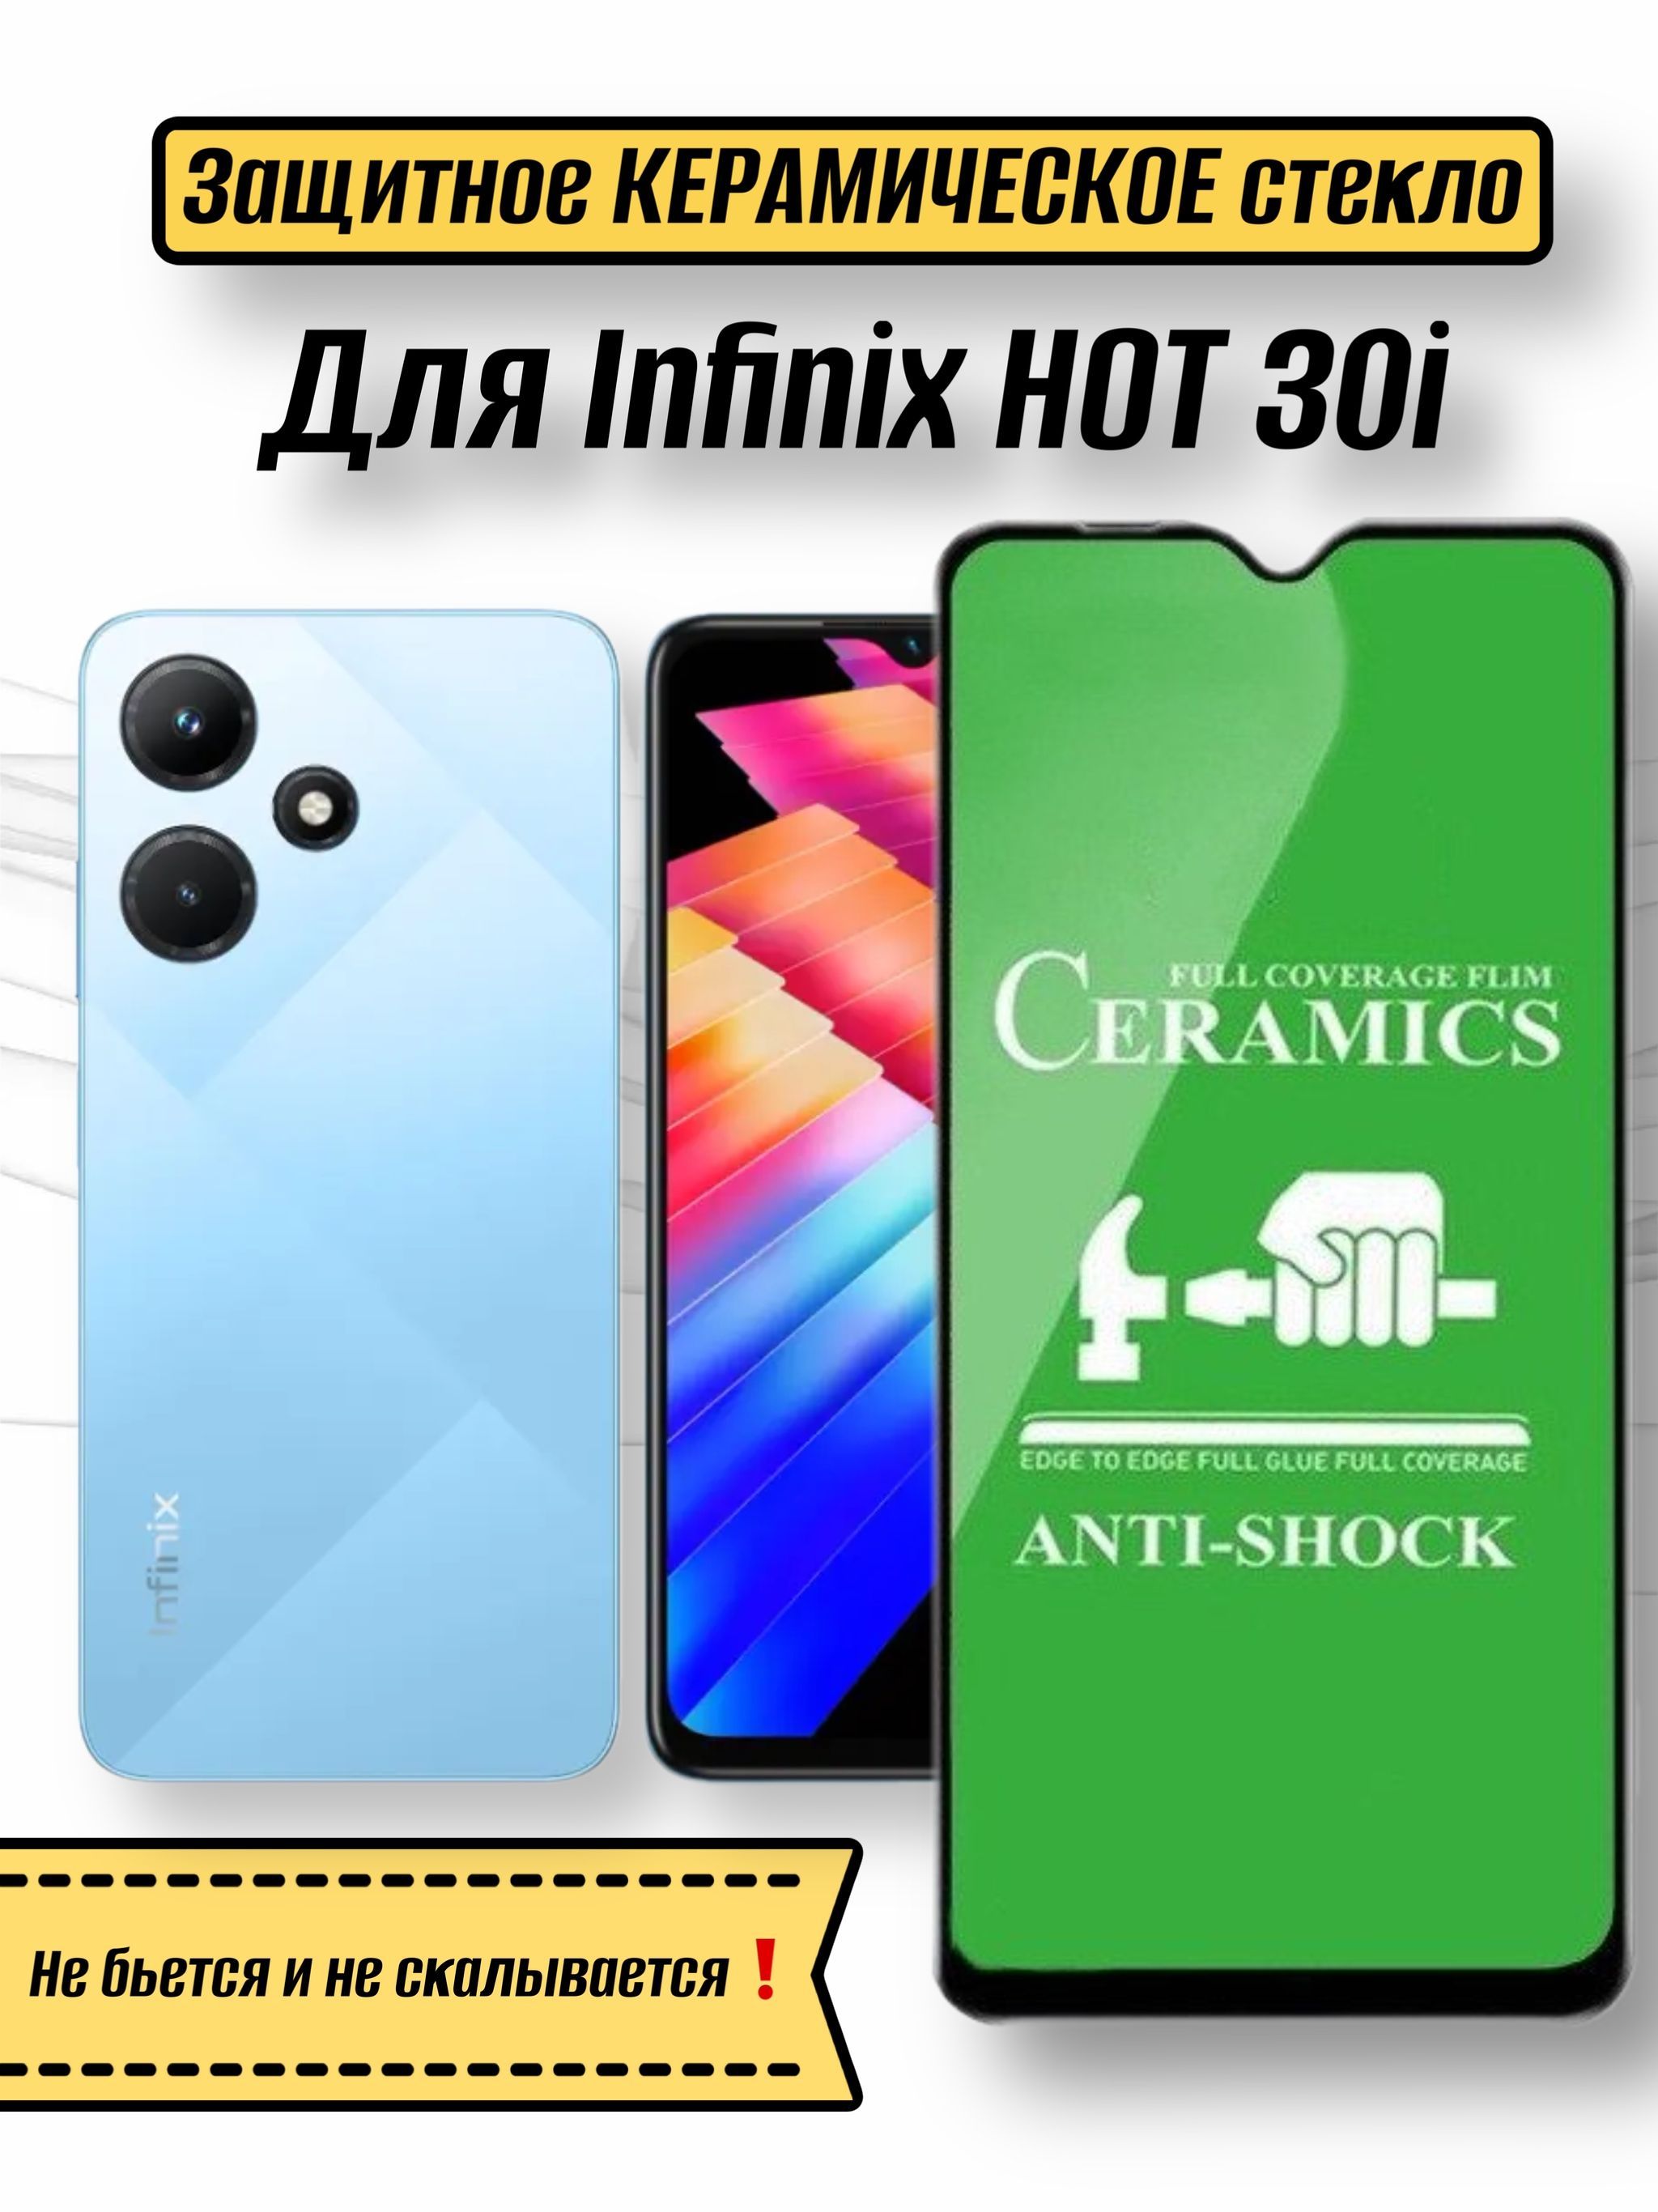 Infinix hot 30. Infinix hot 30i отзывы. Infinix hot 30 отзывы. Infinix hot 40 i Green купить.